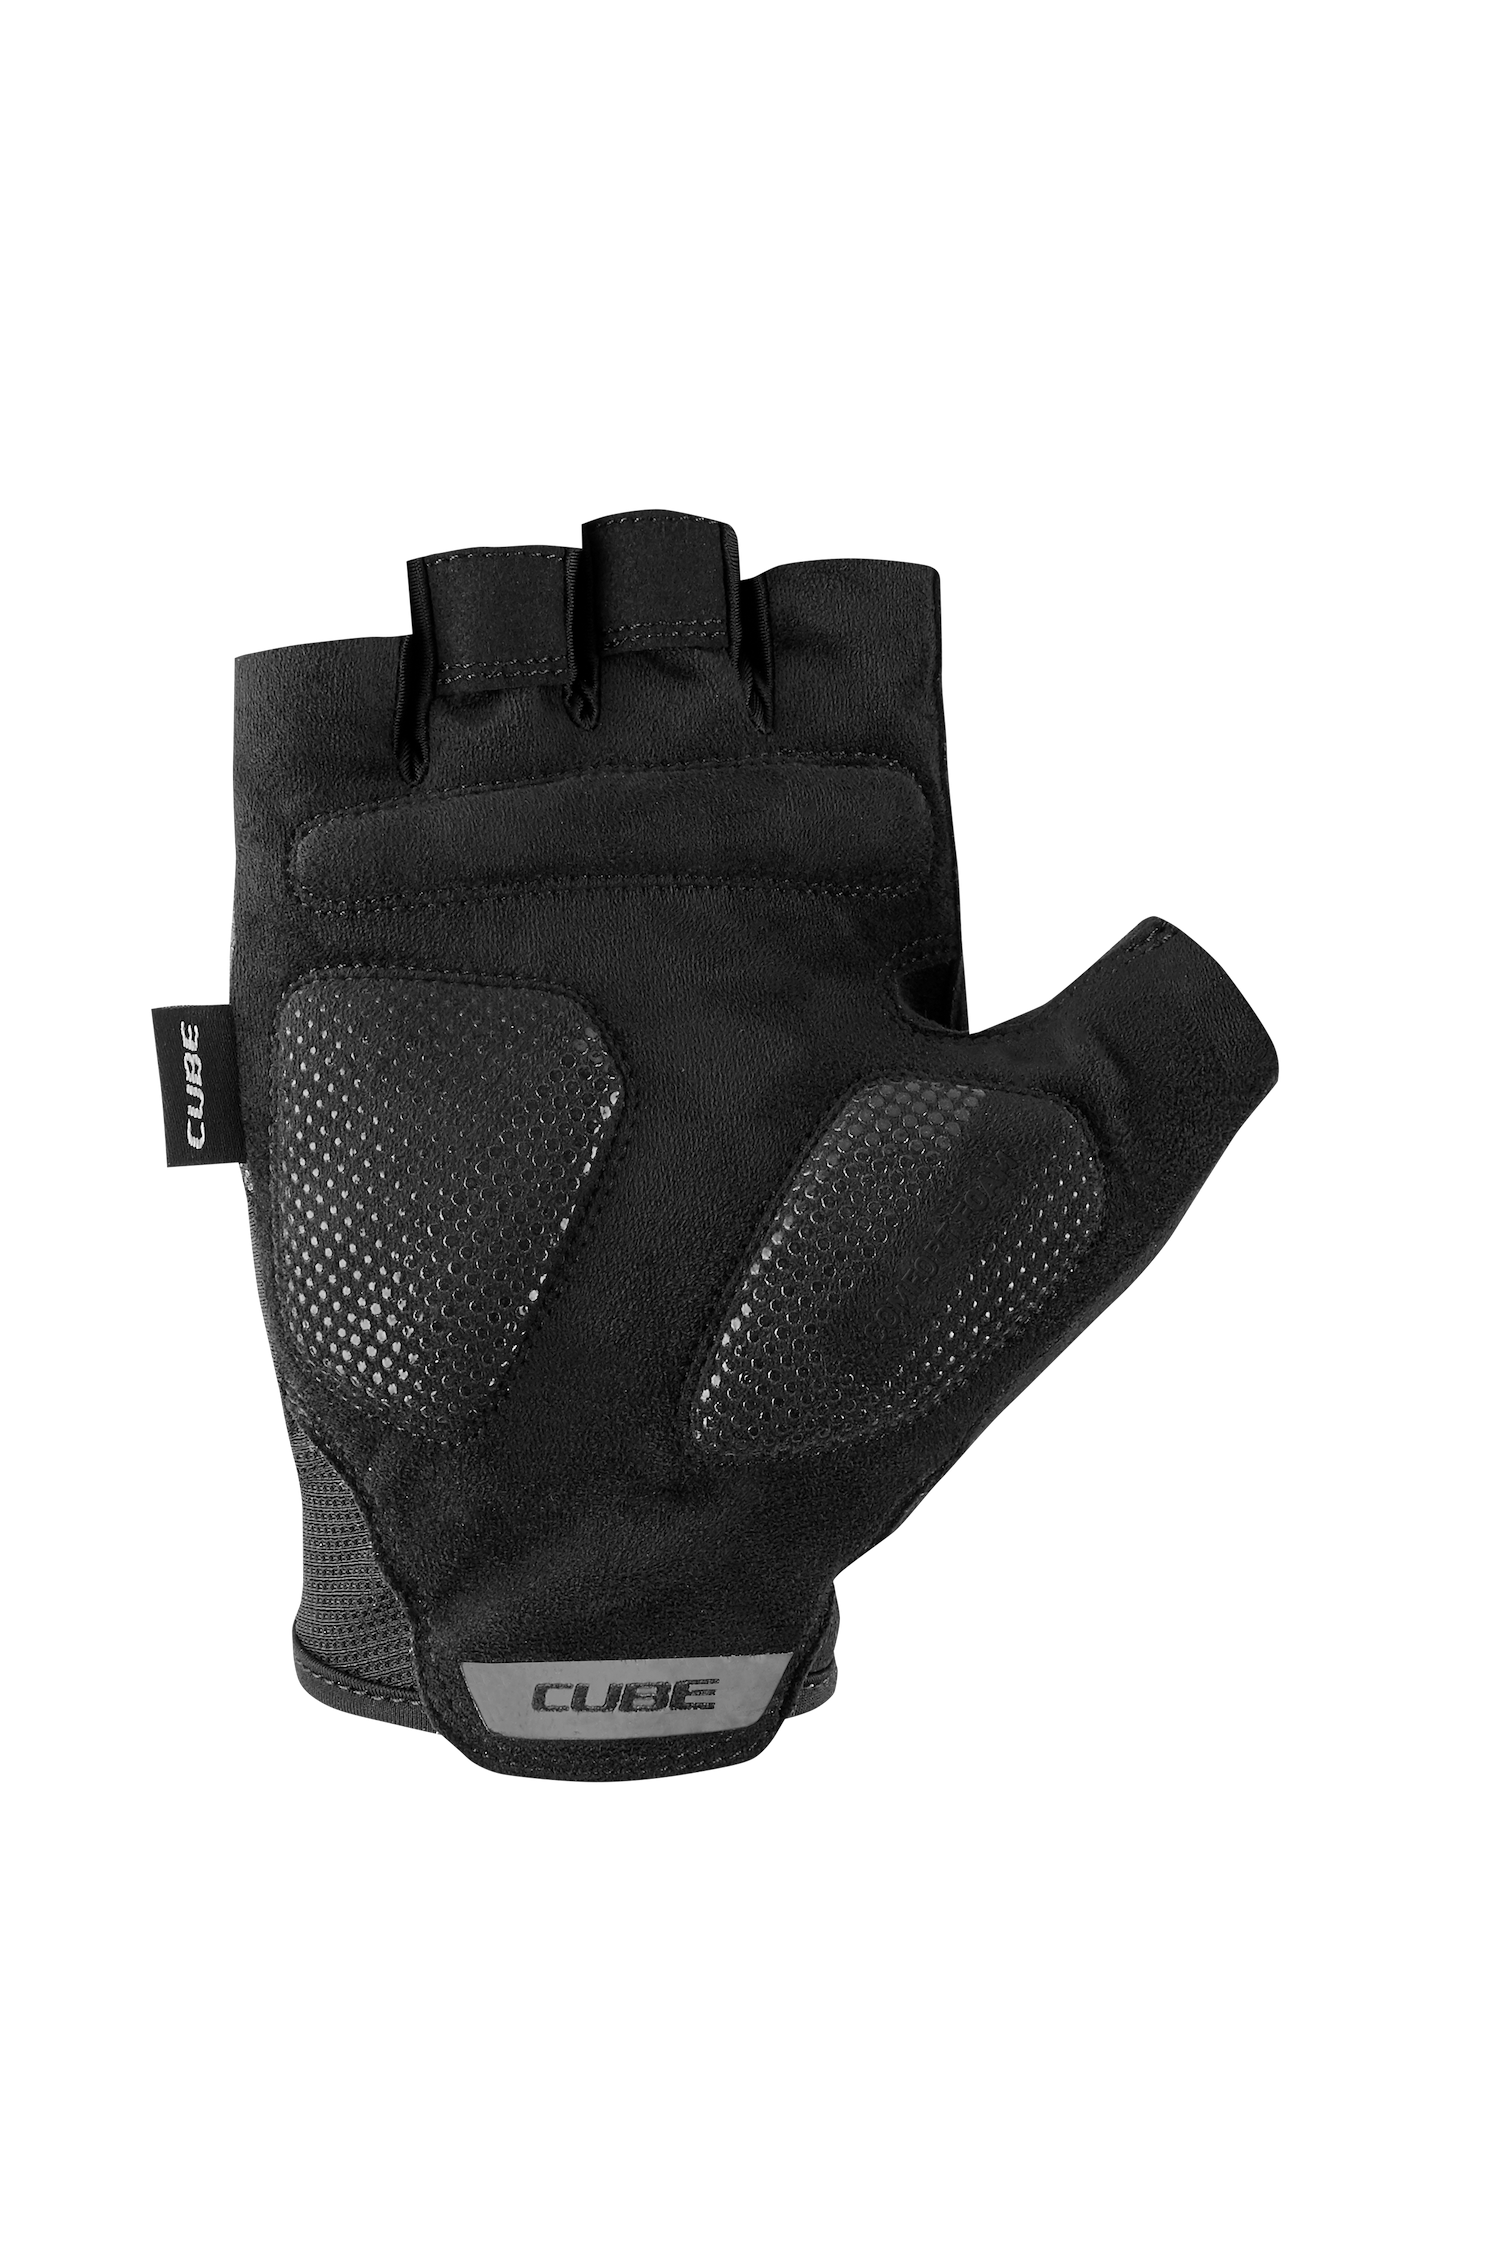 CUBE Handschuhe CMPT COMFORT black´n grey kurzfinger